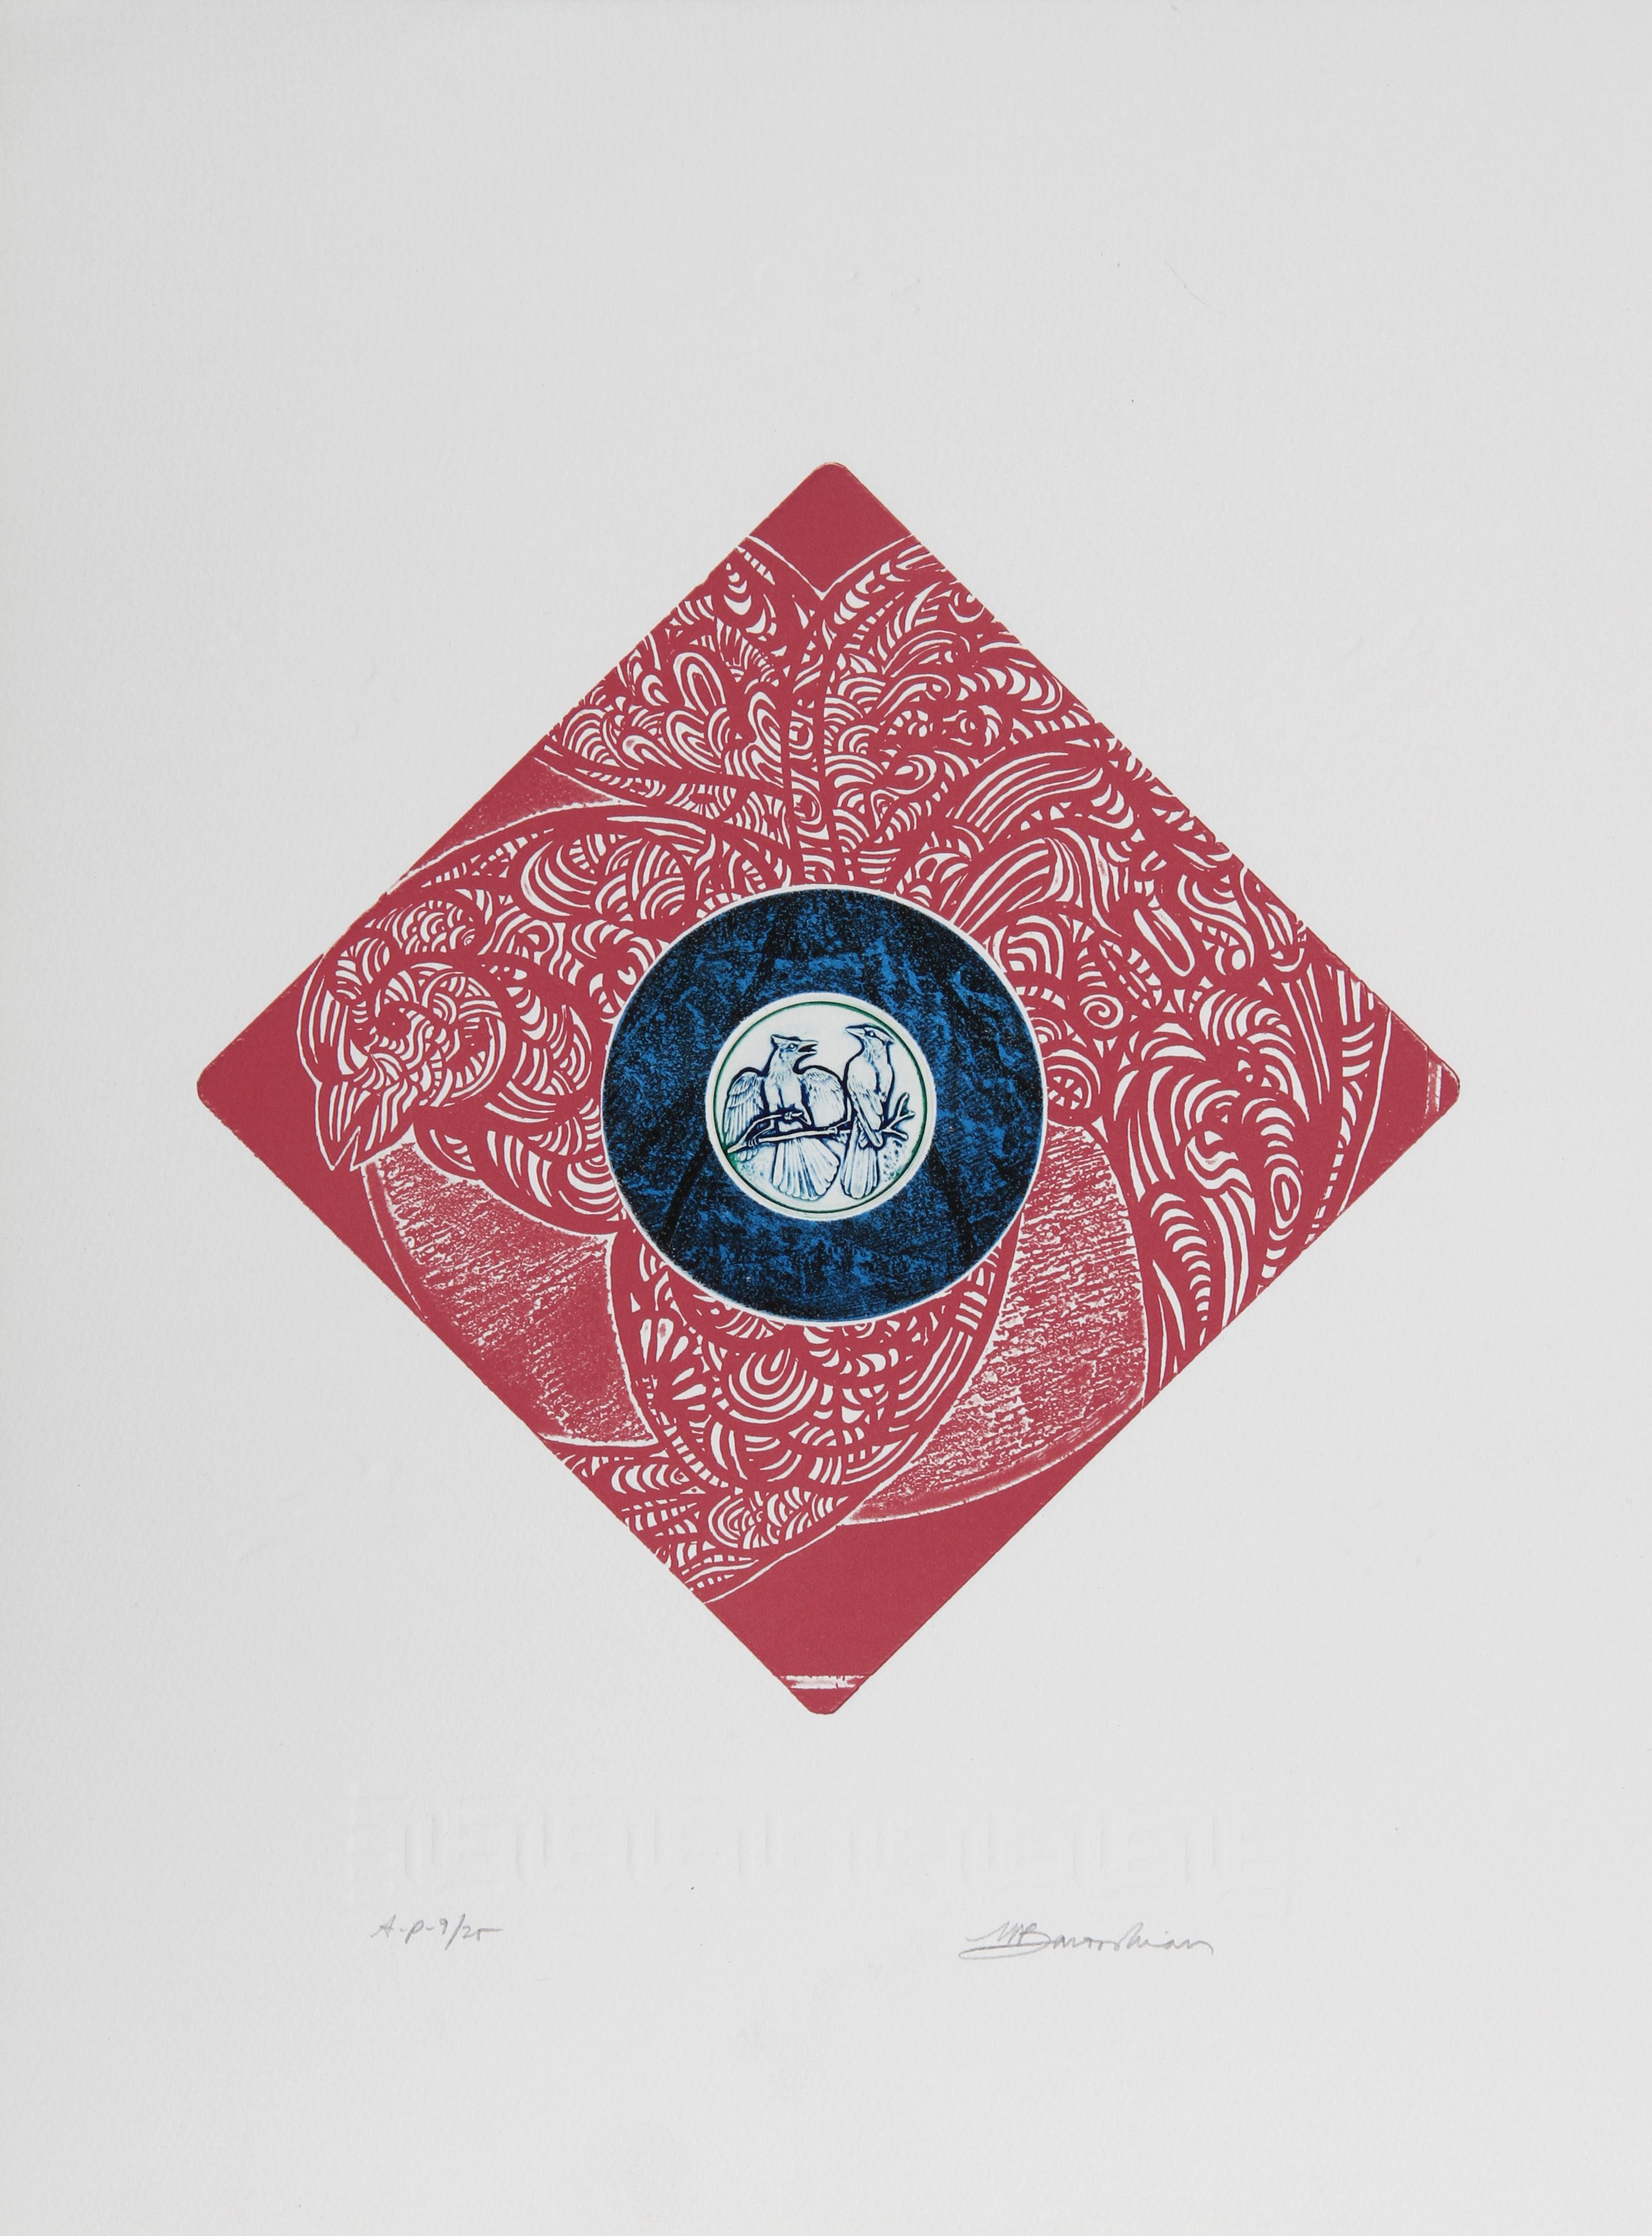 Blue Jays
Martin Barooshian, Américain (1929-2022)
Date : vers 1981
Gravure en taille-douce et aquatinte, signée et numérotée au crayon
Edition de 175, AP 25
Taille de l'image : 11 x 11 pouces
Dimensions : 50,8 cm x 38,1 cm (20 in. x 15 in.)